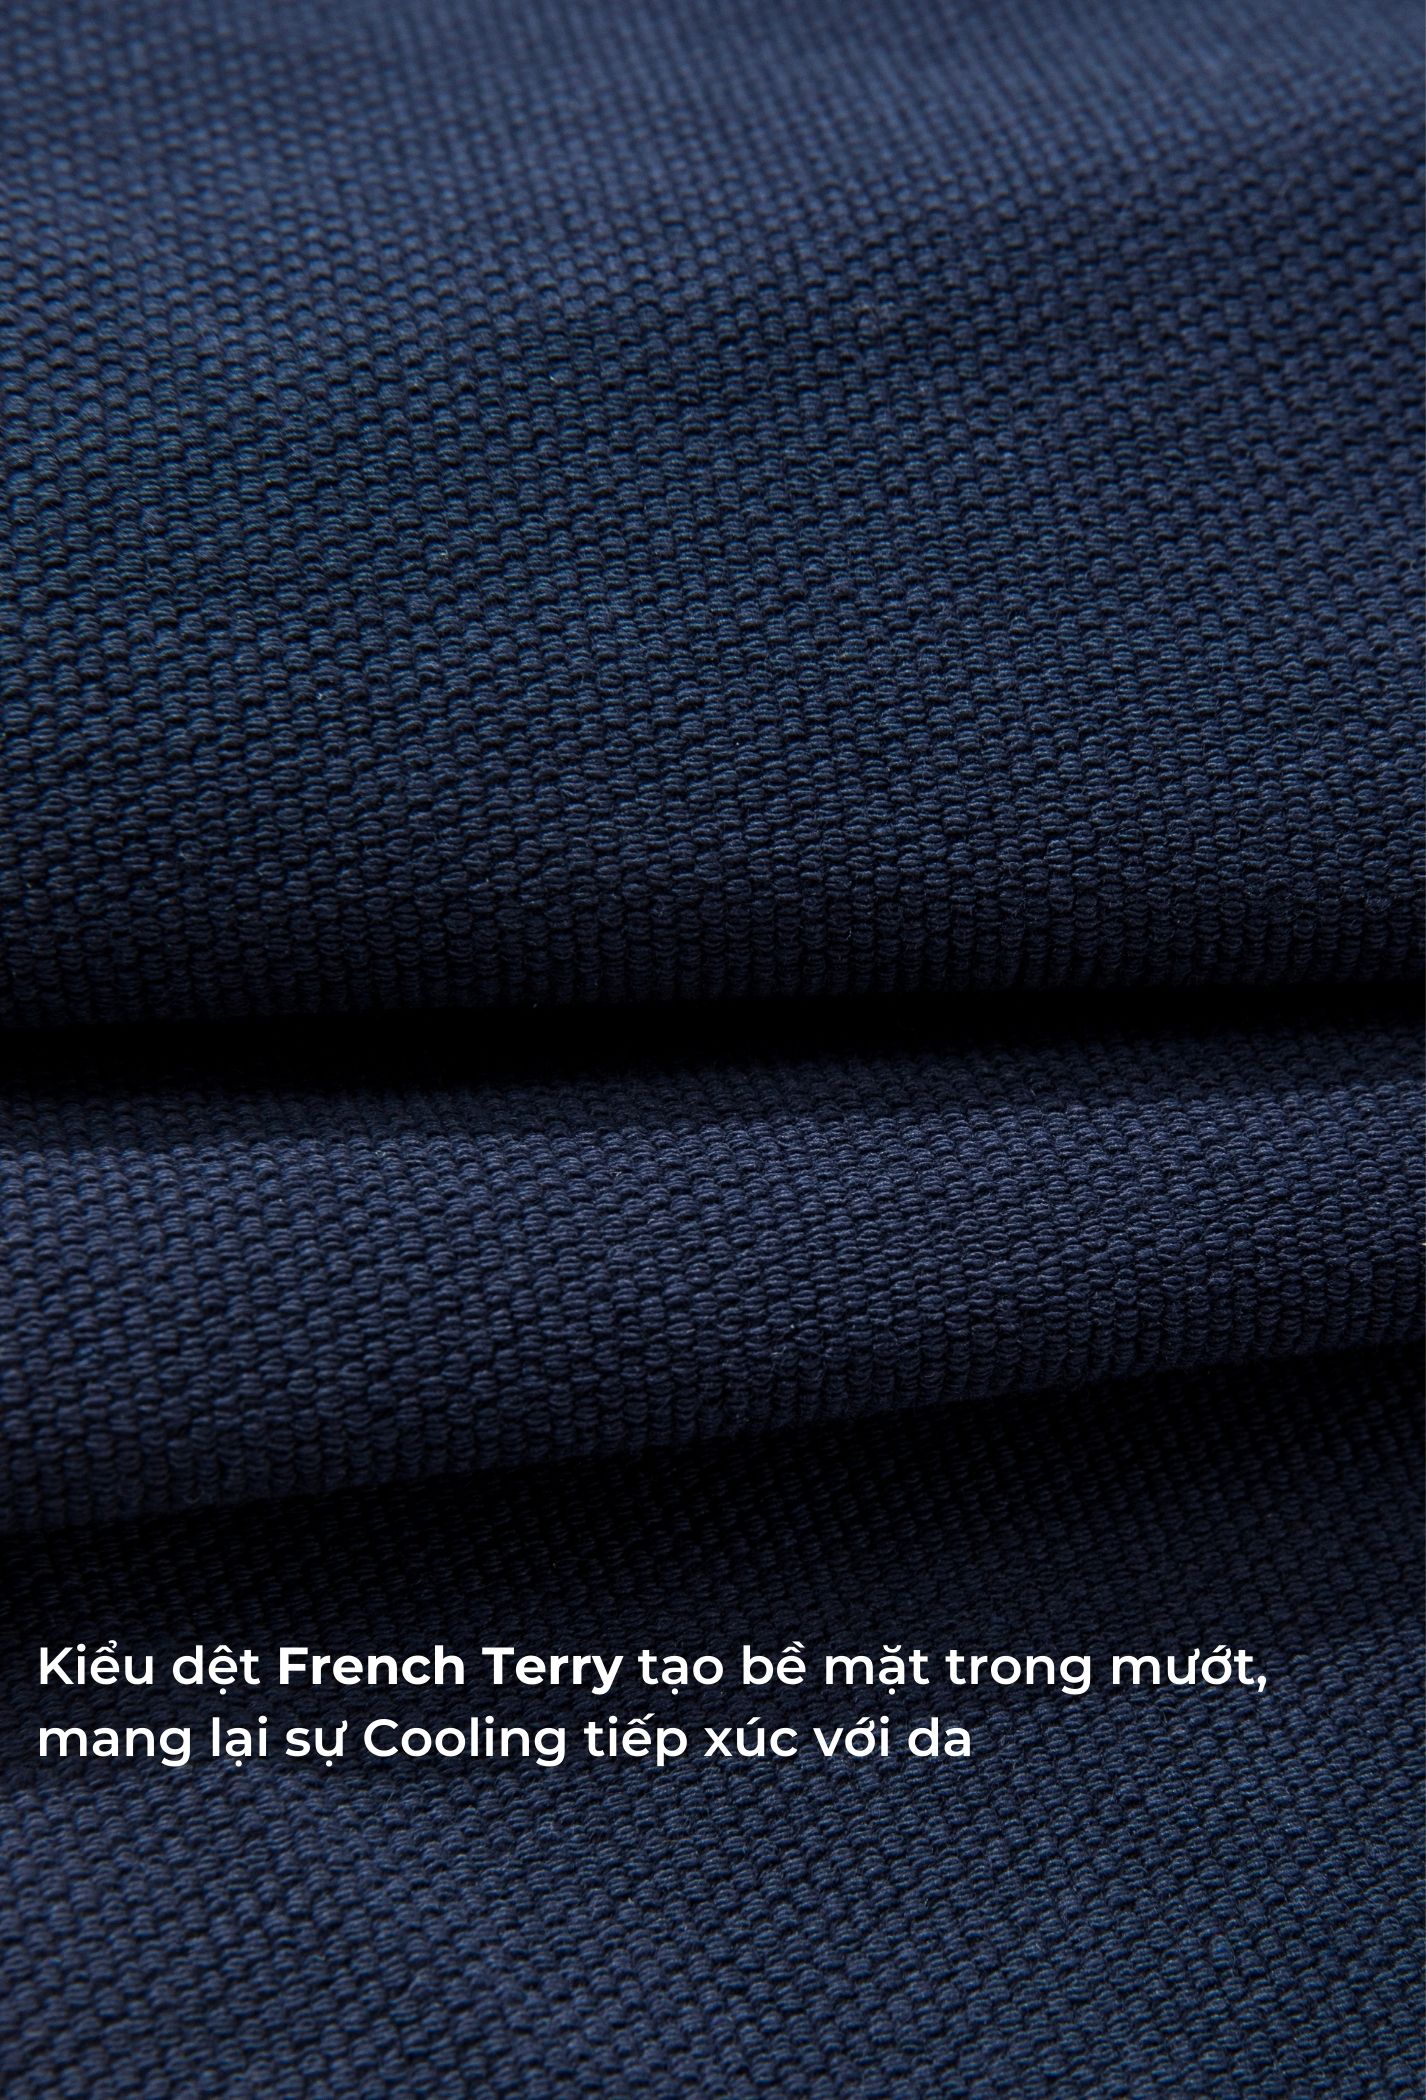 SĂN DEAL - Quần Short Nam New French Terry Xanh Navy 5